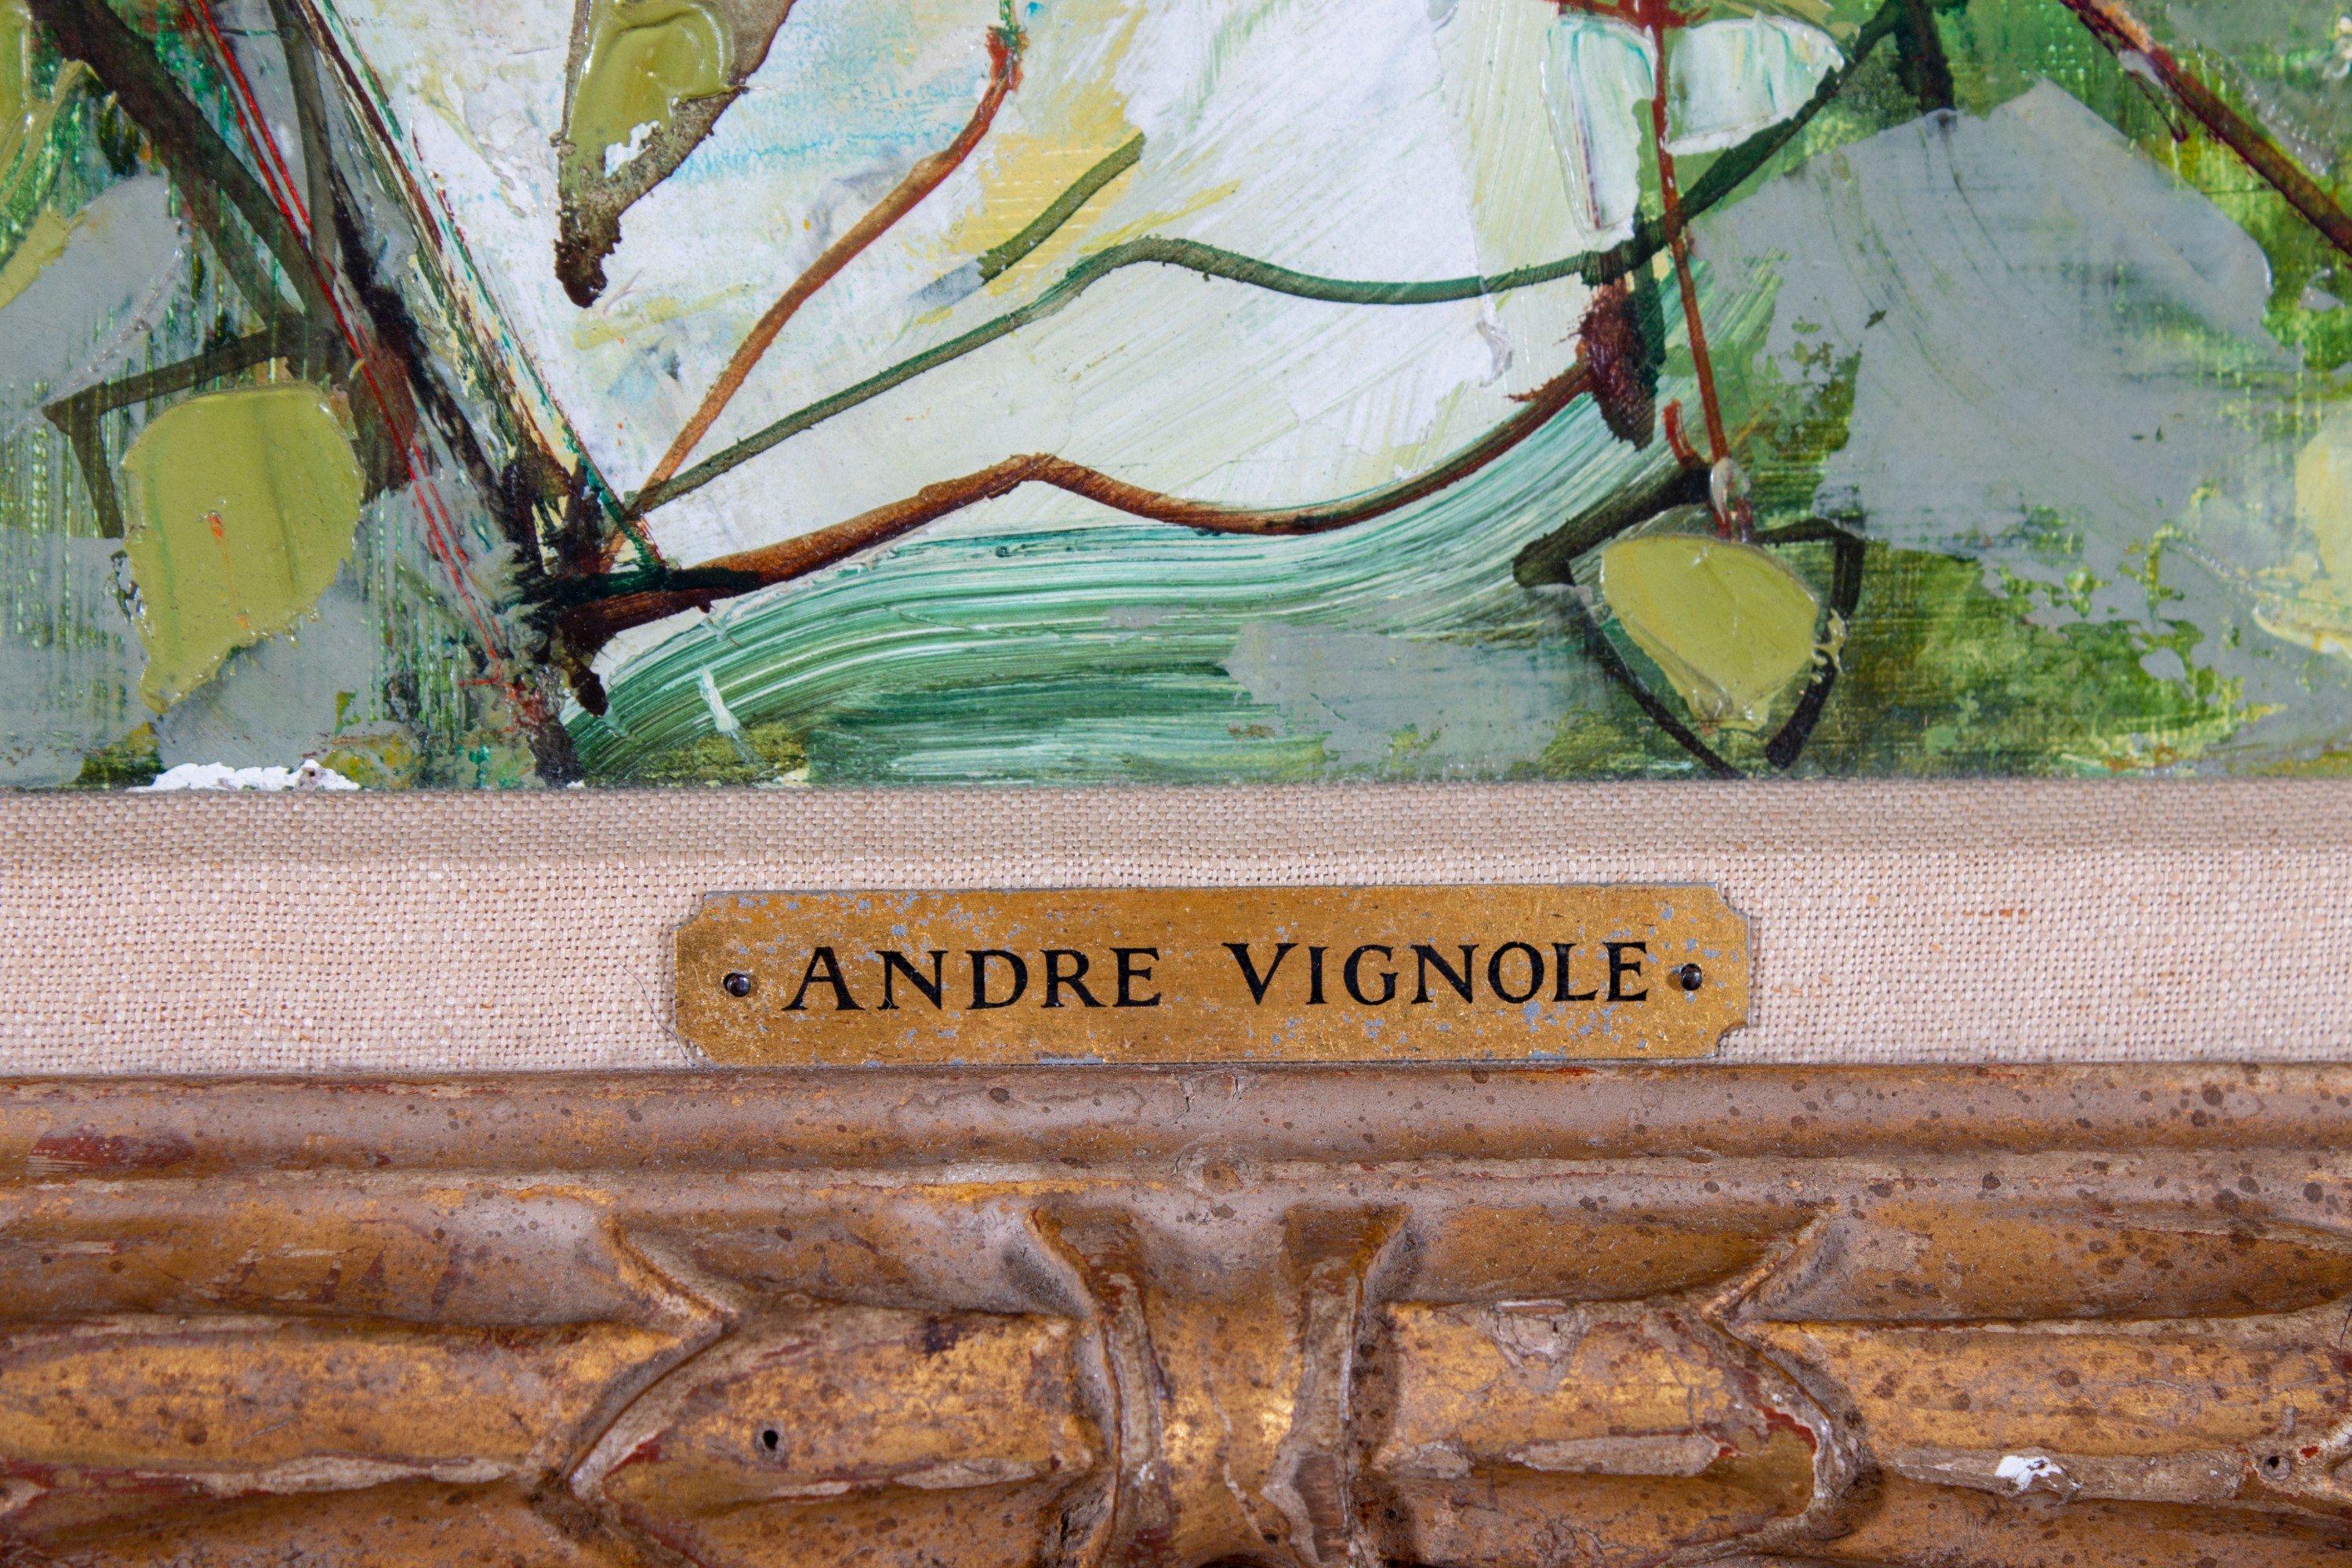 André Vignoles (français, 1920-2017)
Poires et poivrons, 1957
Huile sur toile
Signé et daté en bas à gauche
48 in. h. x 28 in. l., tel qu'encadré
39 in. h. x 19 in. l., toile

André Vignoles est né dans le sud-ouest de la France le 5 août 1920. Il a